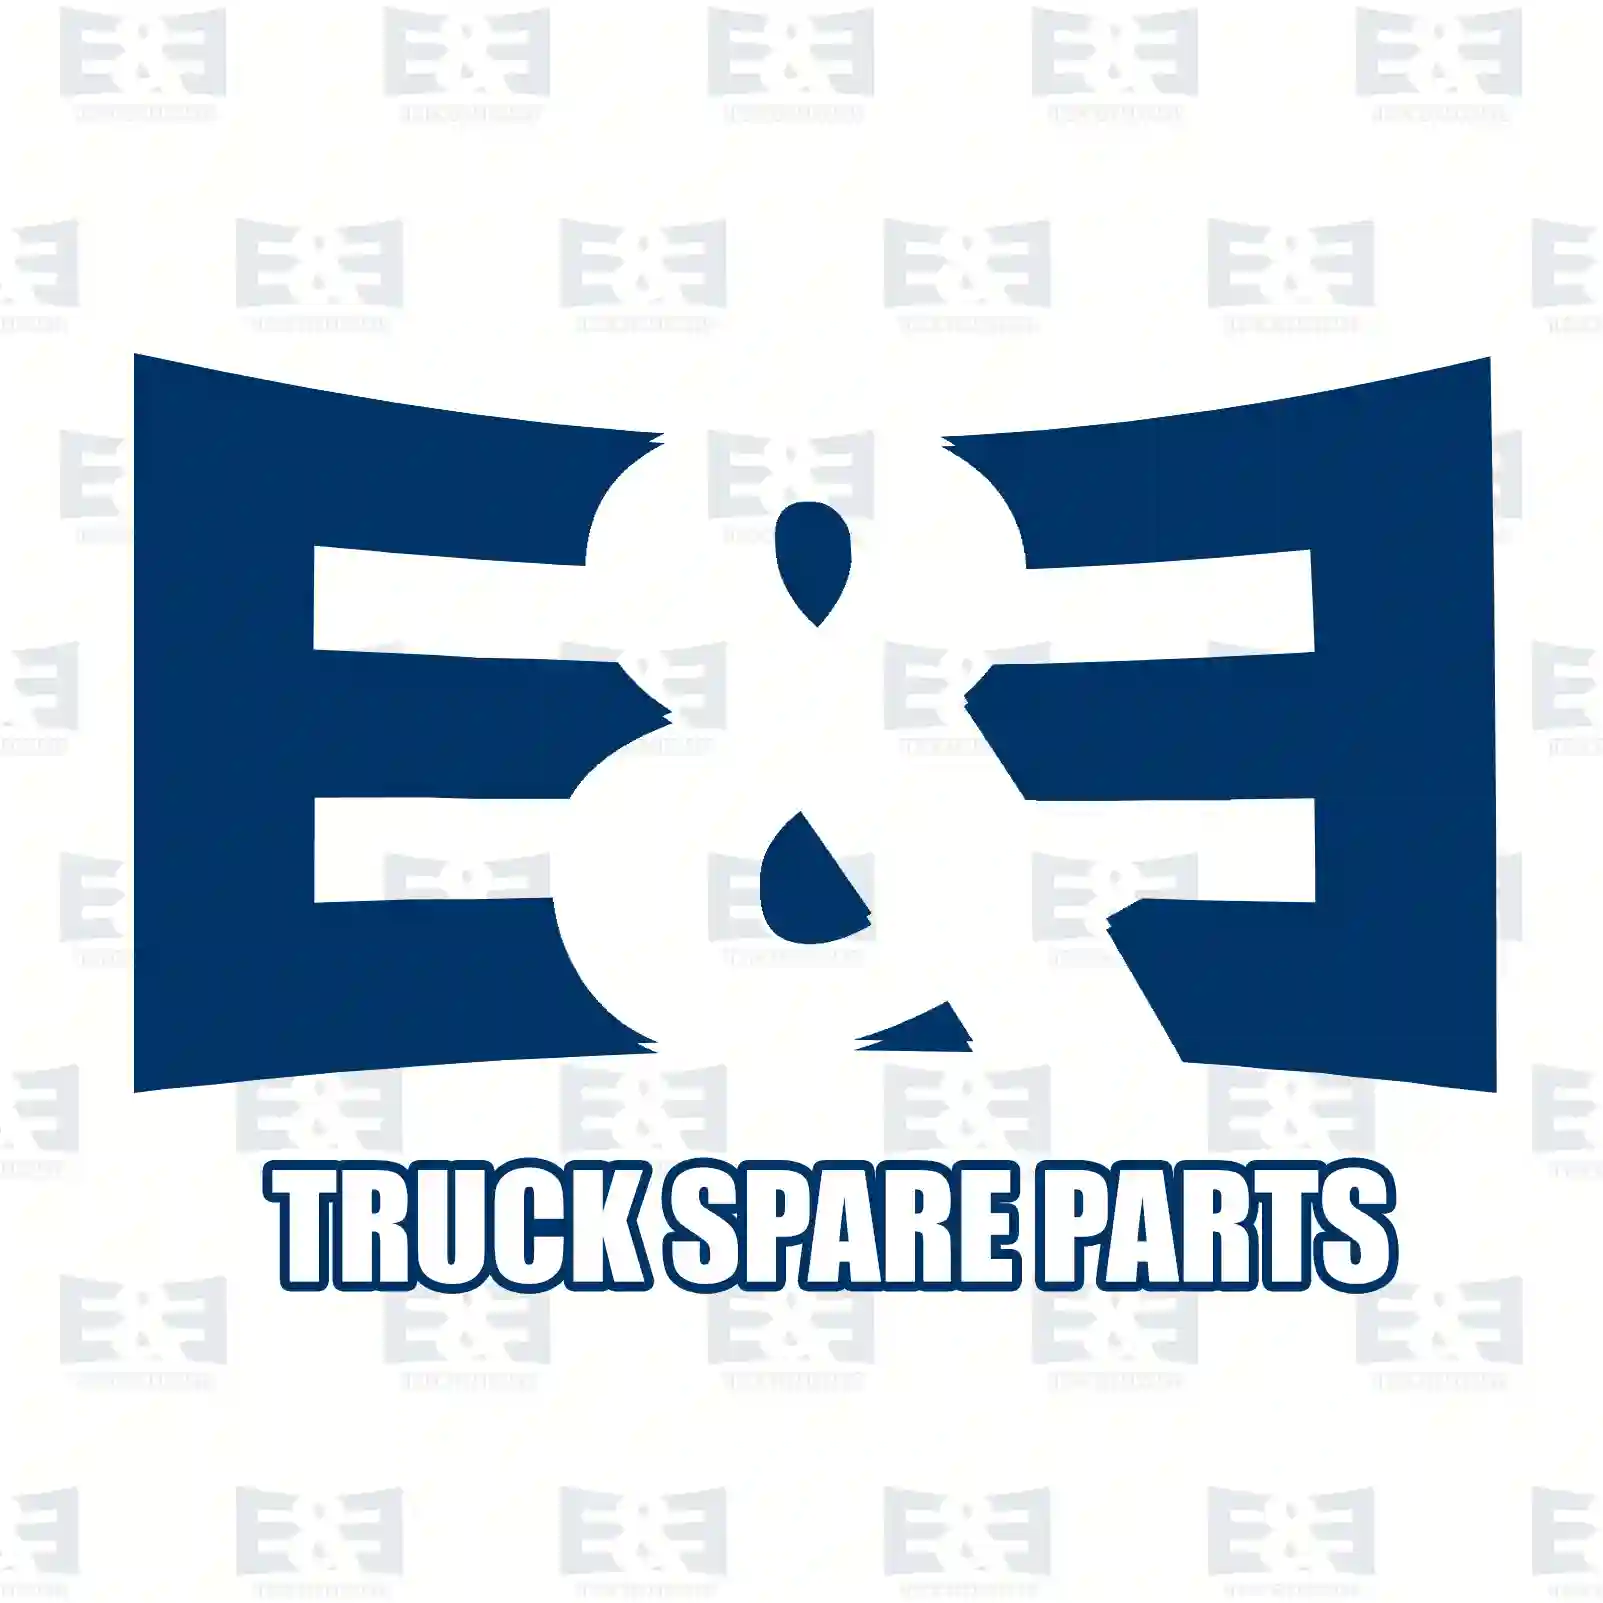 Stabilizer stay, 2E2283812, 4346344, 4440885, 4531299, 4709303, YC15-5C486-AD, YC15-5C486-AE, YC15-5C486-AF, YC15-5C486-BA ||  2E2283812 E&E Truck Spare Parts | Truck Spare Parts, Auotomotive Spare Parts Stabilizer stay, 2E2283812, 4346344, 4440885, 4531299, 4709303, YC15-5C486-AD, YC15-5C486-AE, YC15-5C486-AF, YC15-5C486-BA ||  2E2283812 E&E Truck Spare Parts | Truck Spare Parts, Auotomotive Spare Parts